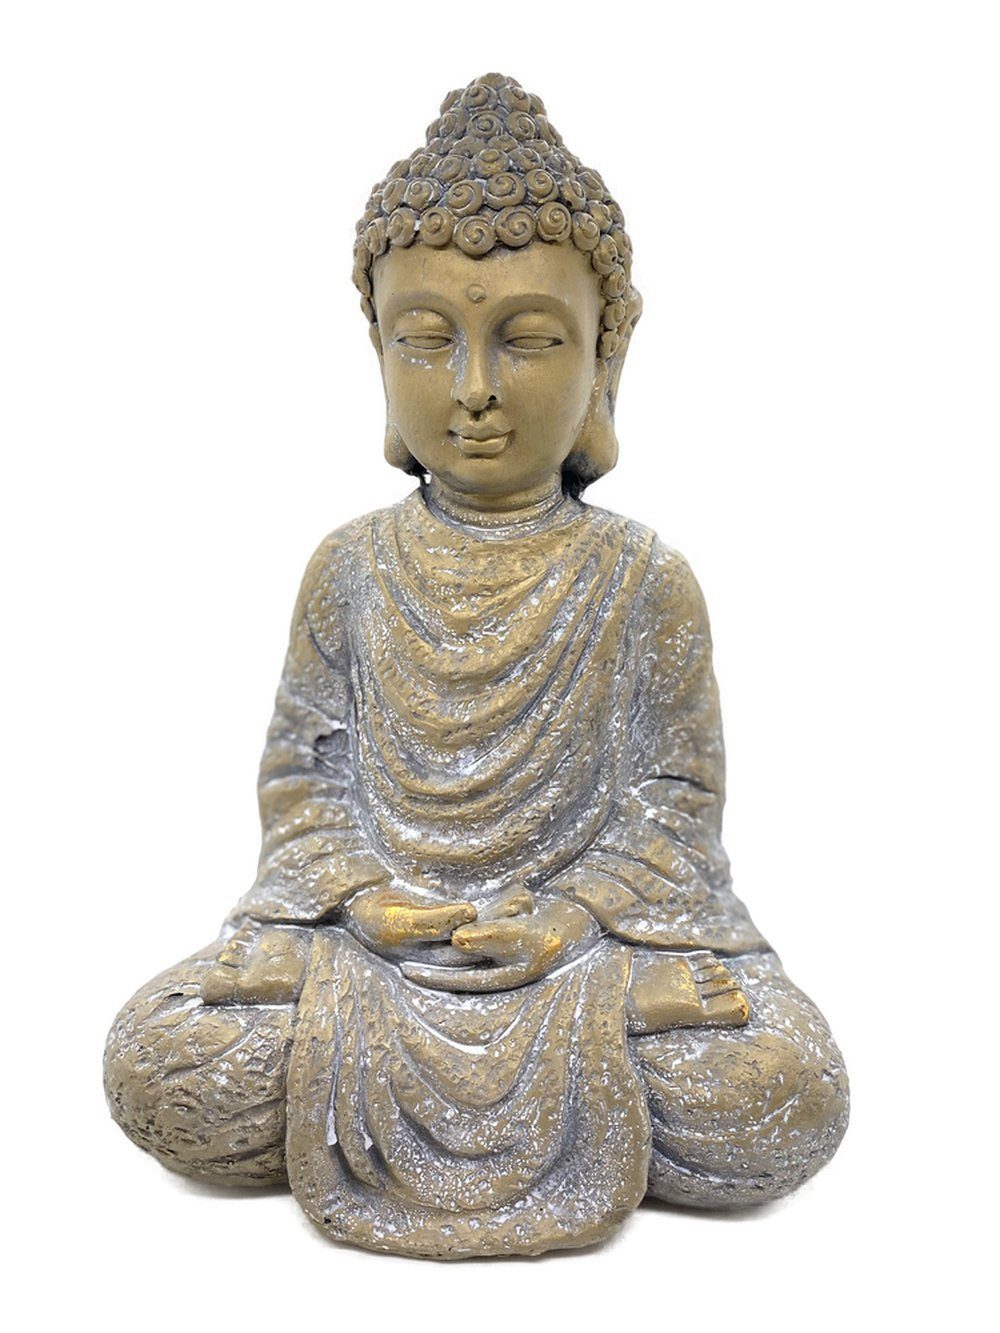 Parts4Living Buddhafigur Magnesia Buddha Figur mit gefalteten Händen Dekofigur  Skulptur Buddhastatue Gartenfigur im asiatischen Stil gold/weiß gewischt  21x14,5x31,5 cm